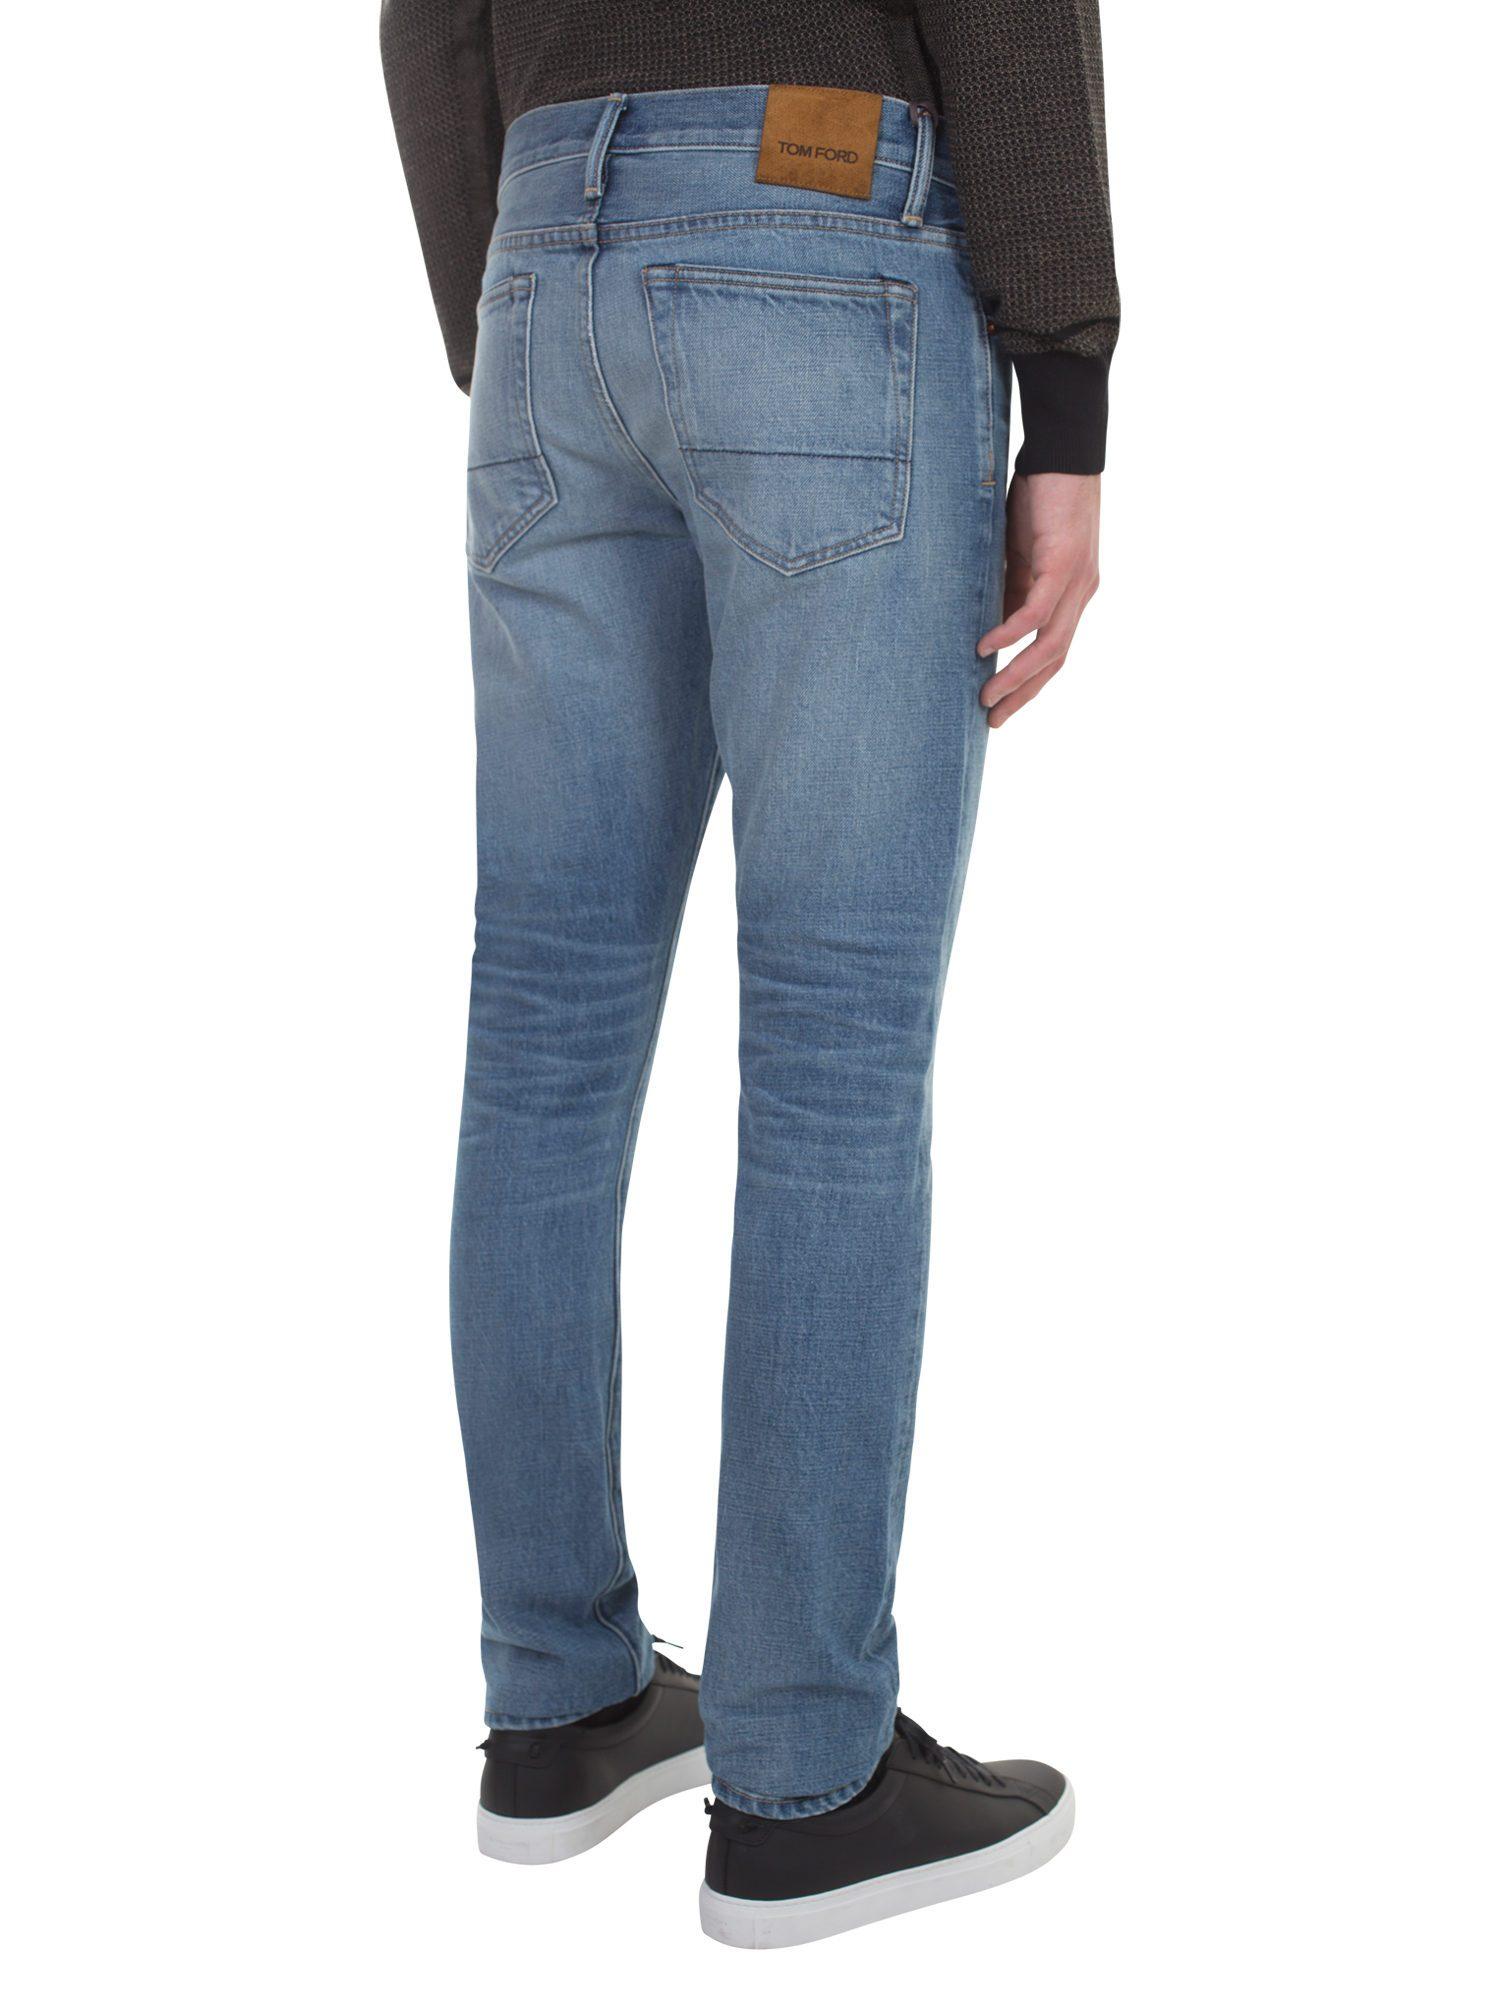 Tom Ford Light Blue Denim Jeans for Men - Lyst